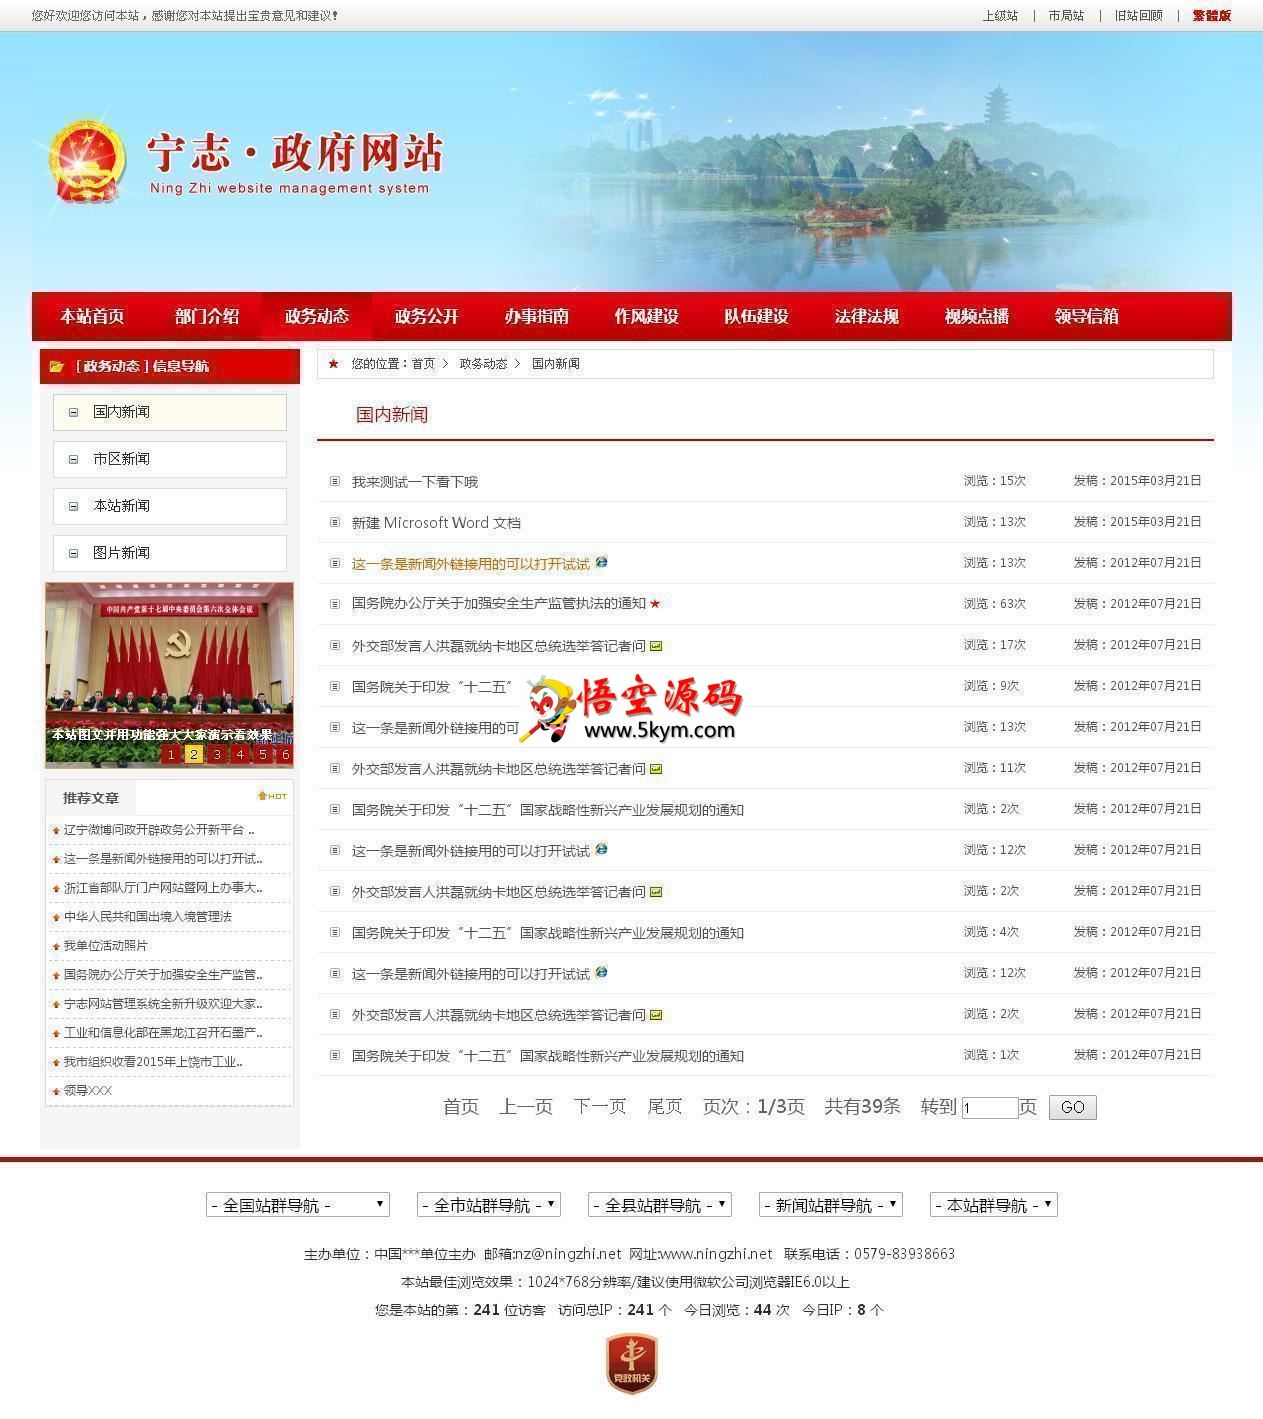 红色政府党建门户信息网建站系统